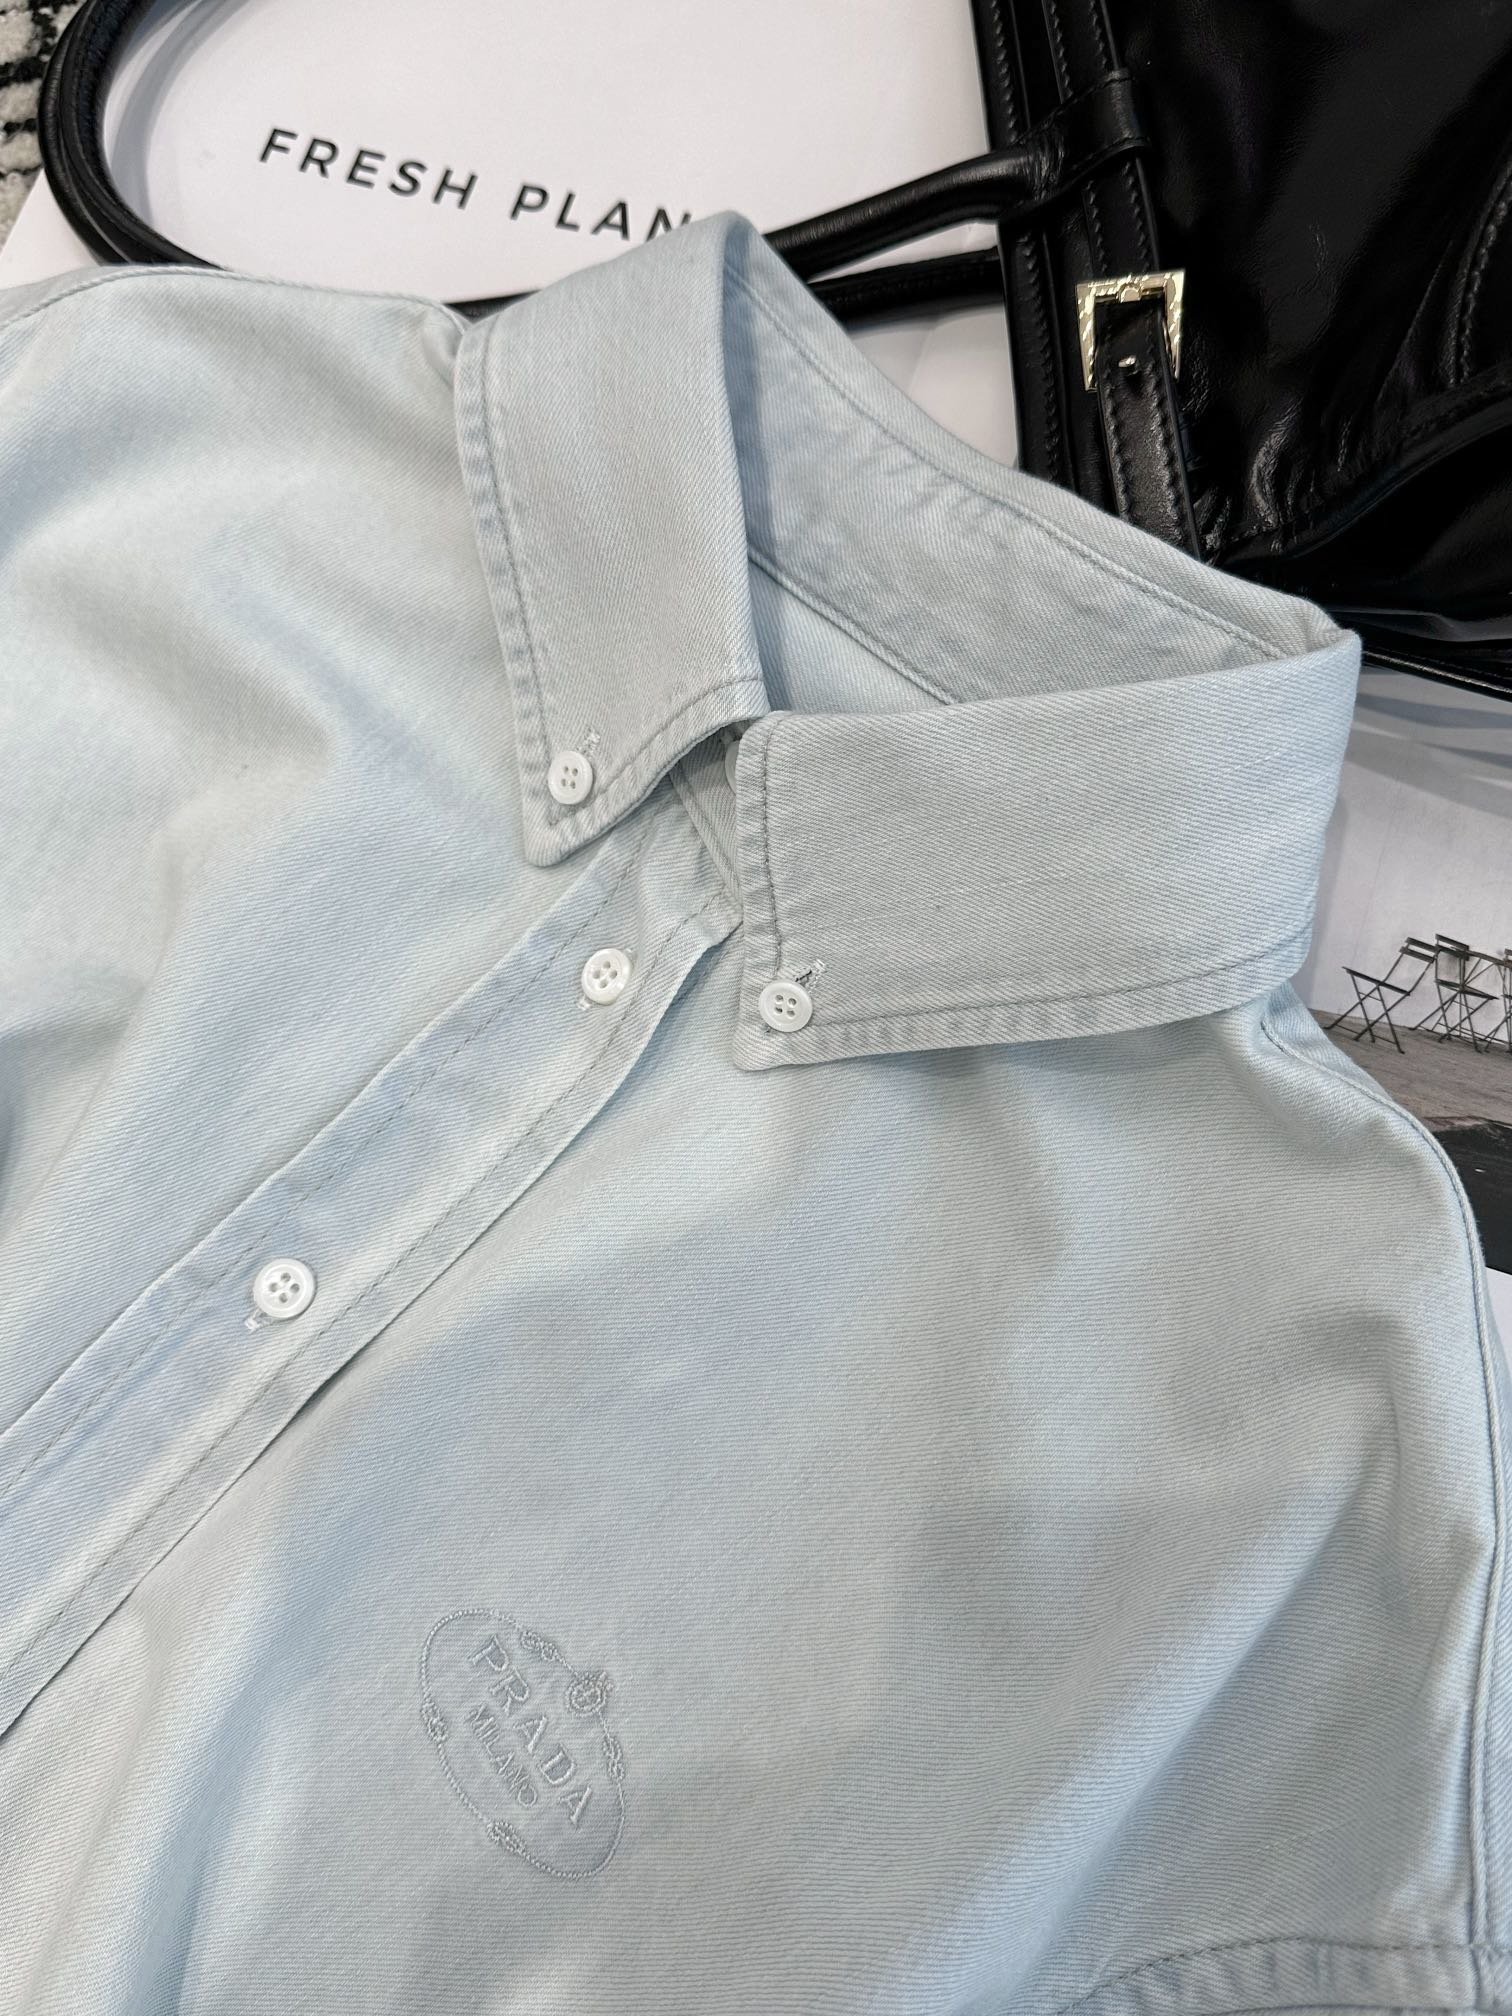 /新品发布浅蓝色牛仔衬衣定制牛仔棉面料面料在制作流程和耗时上花费了大量的时间多重洗水工艺洗软令面料手感颜